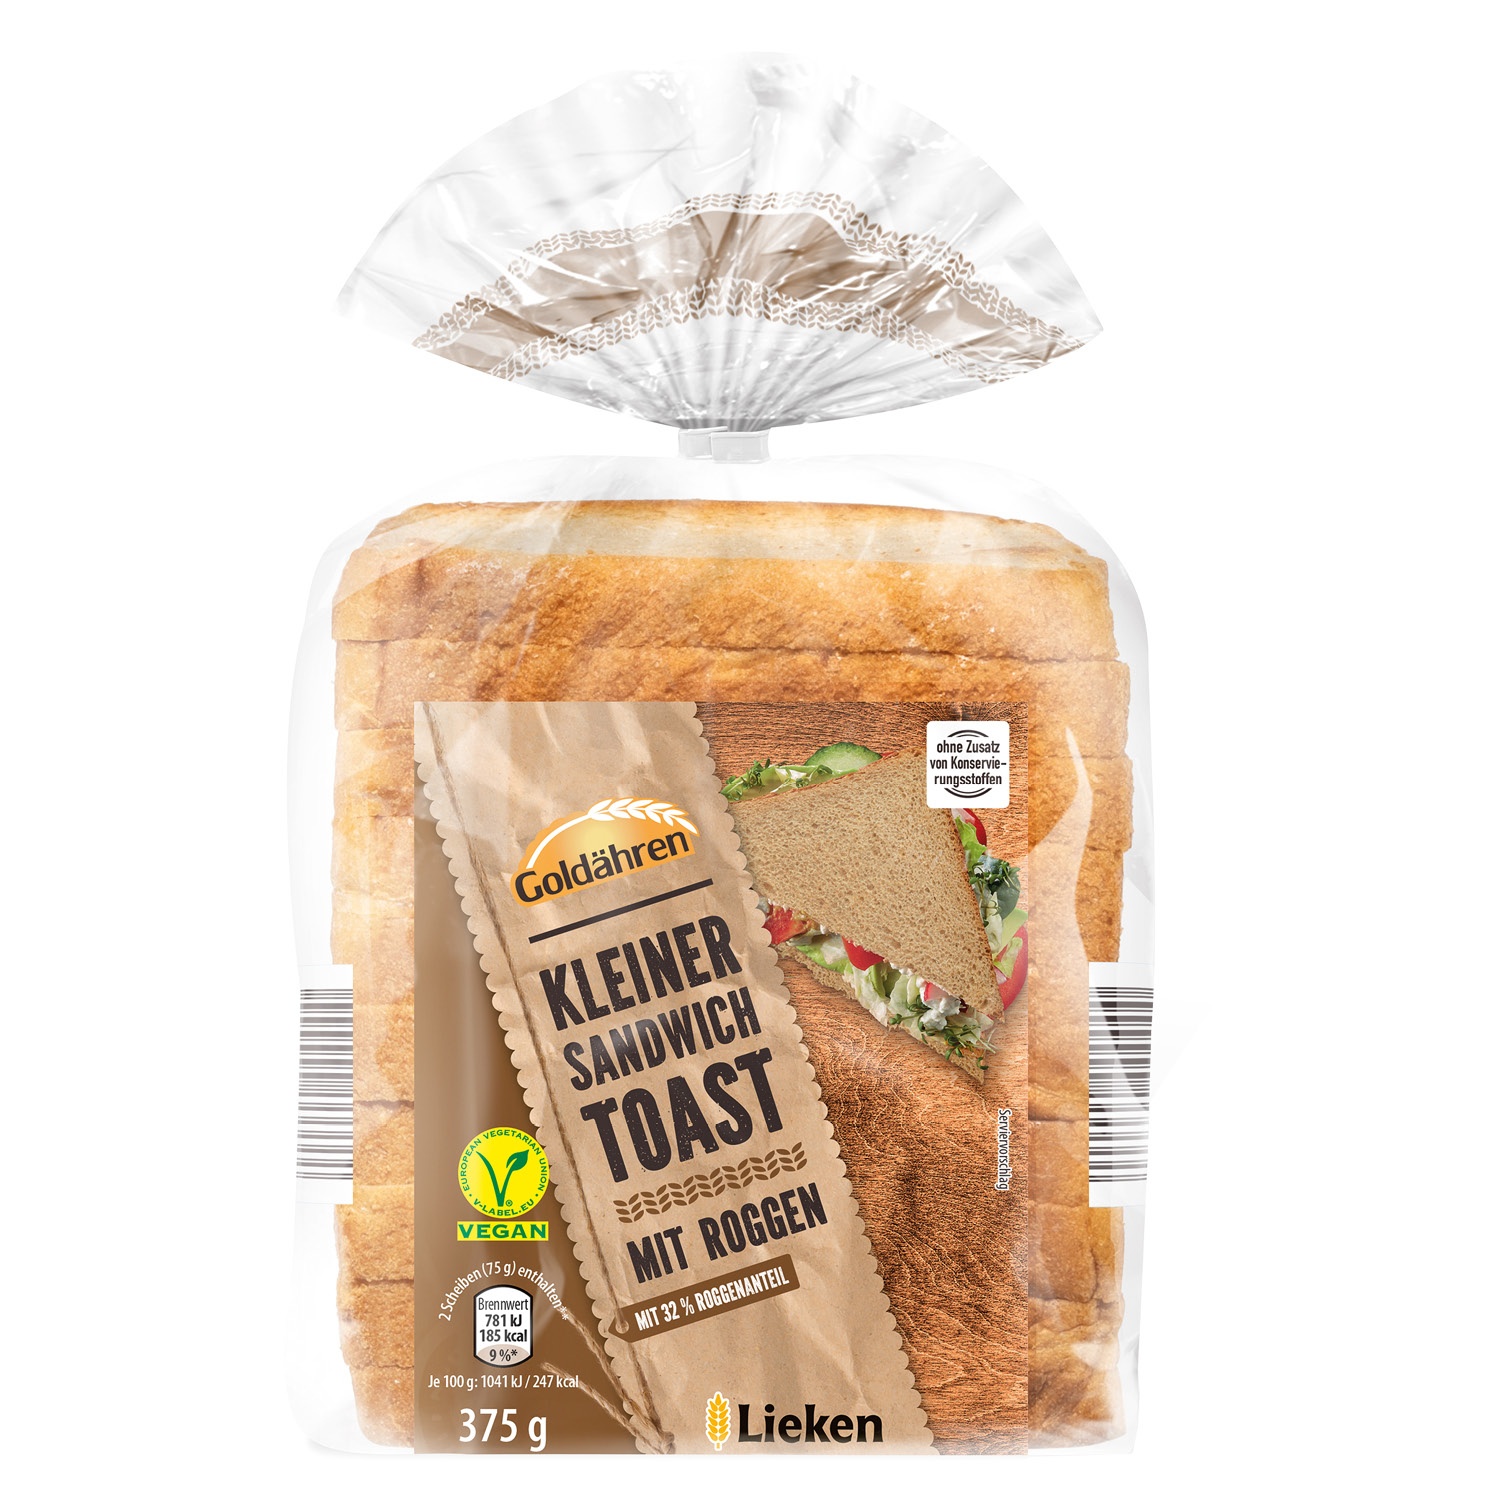 GOLDÄHREN Kleiner Sandwich Toast mit Roggen 375 g